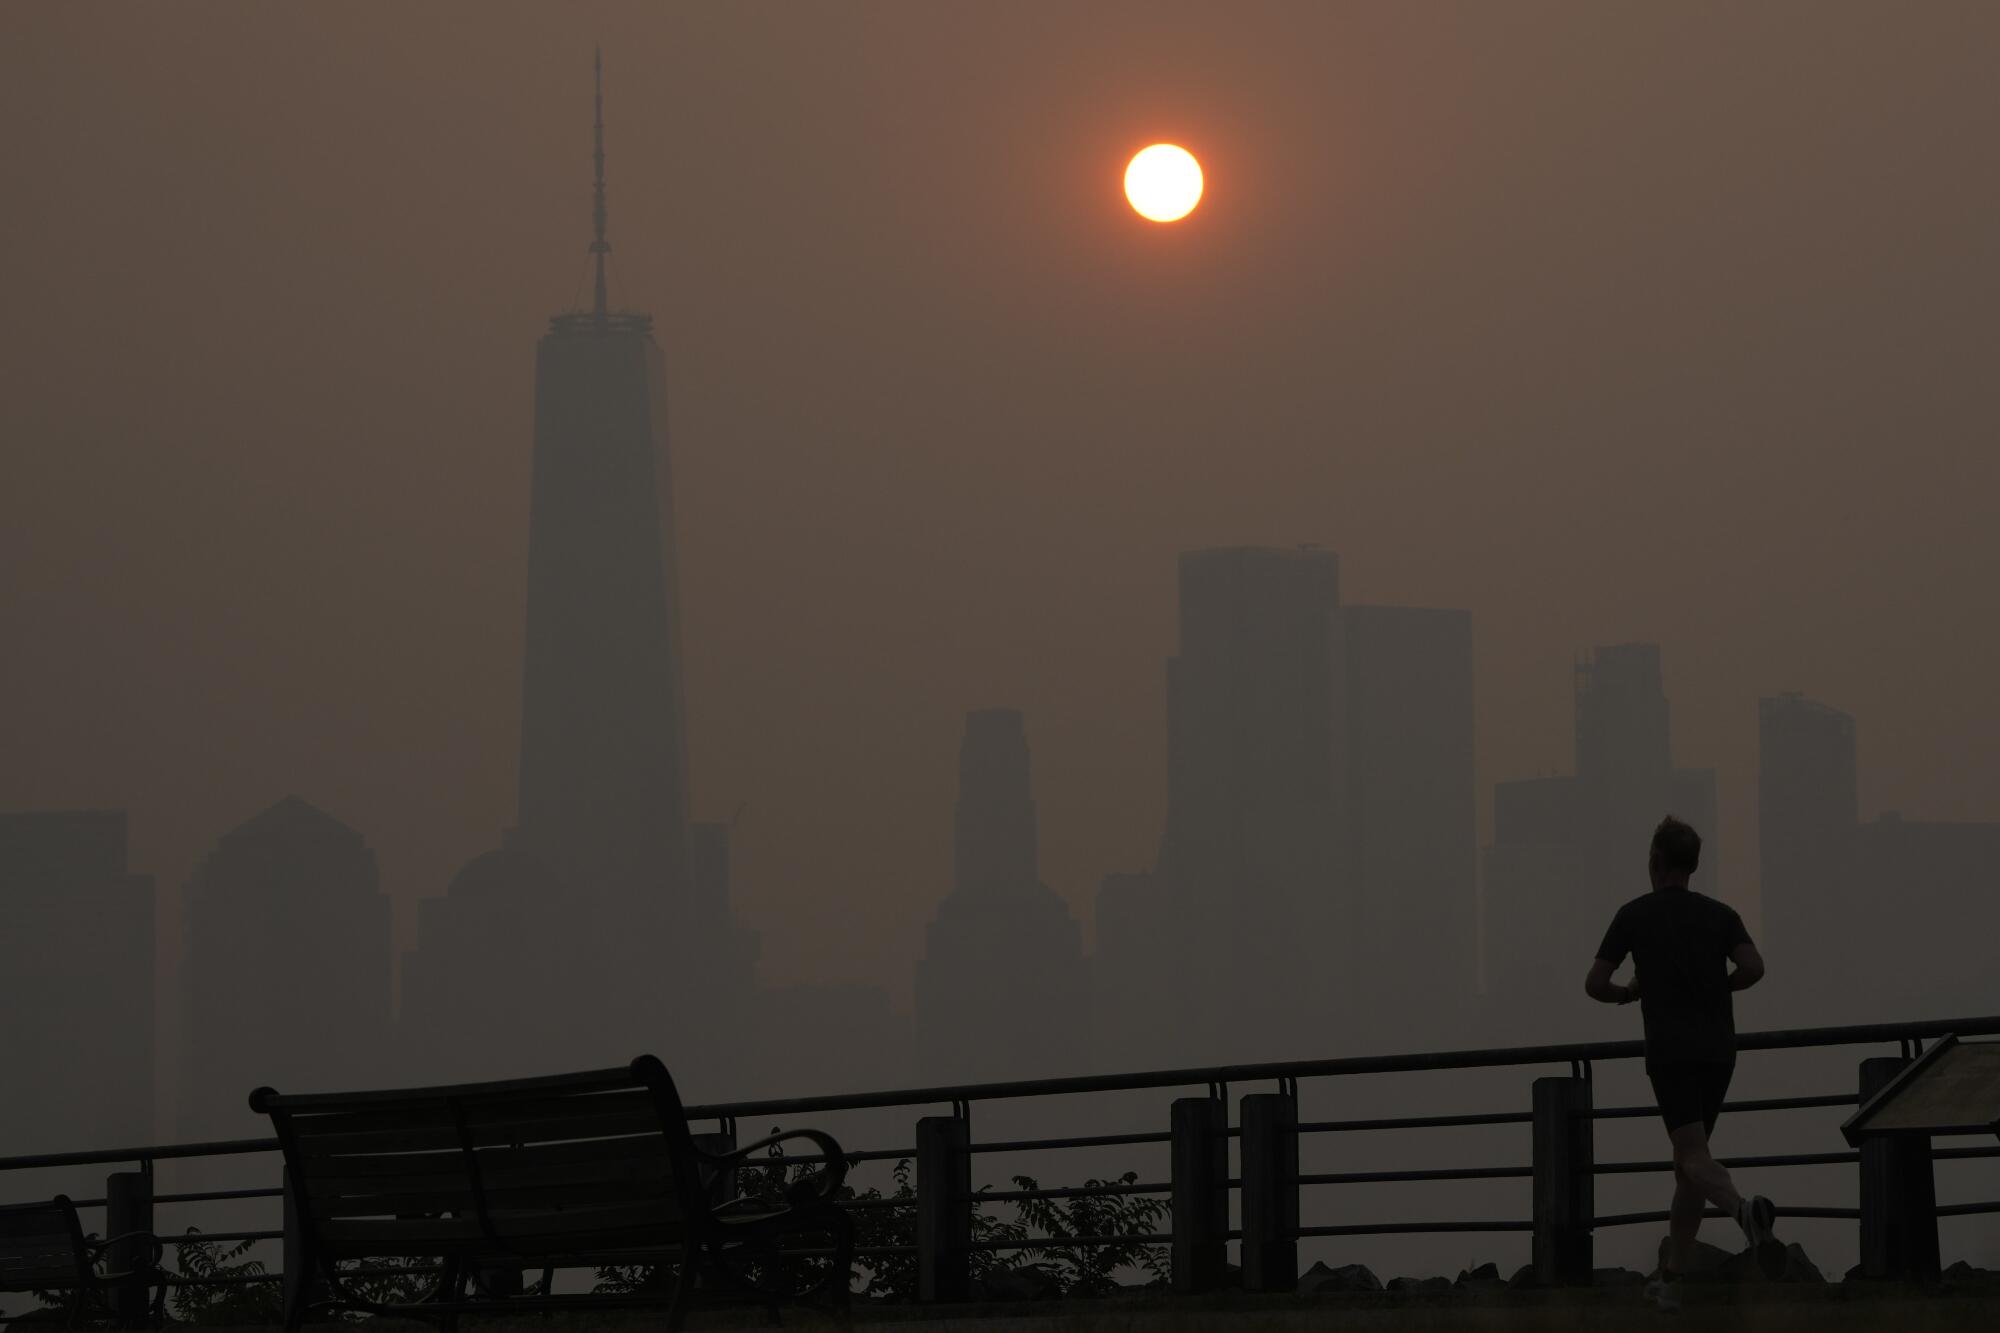 A man runs along a path as the sun rises amid haze over a skyline.